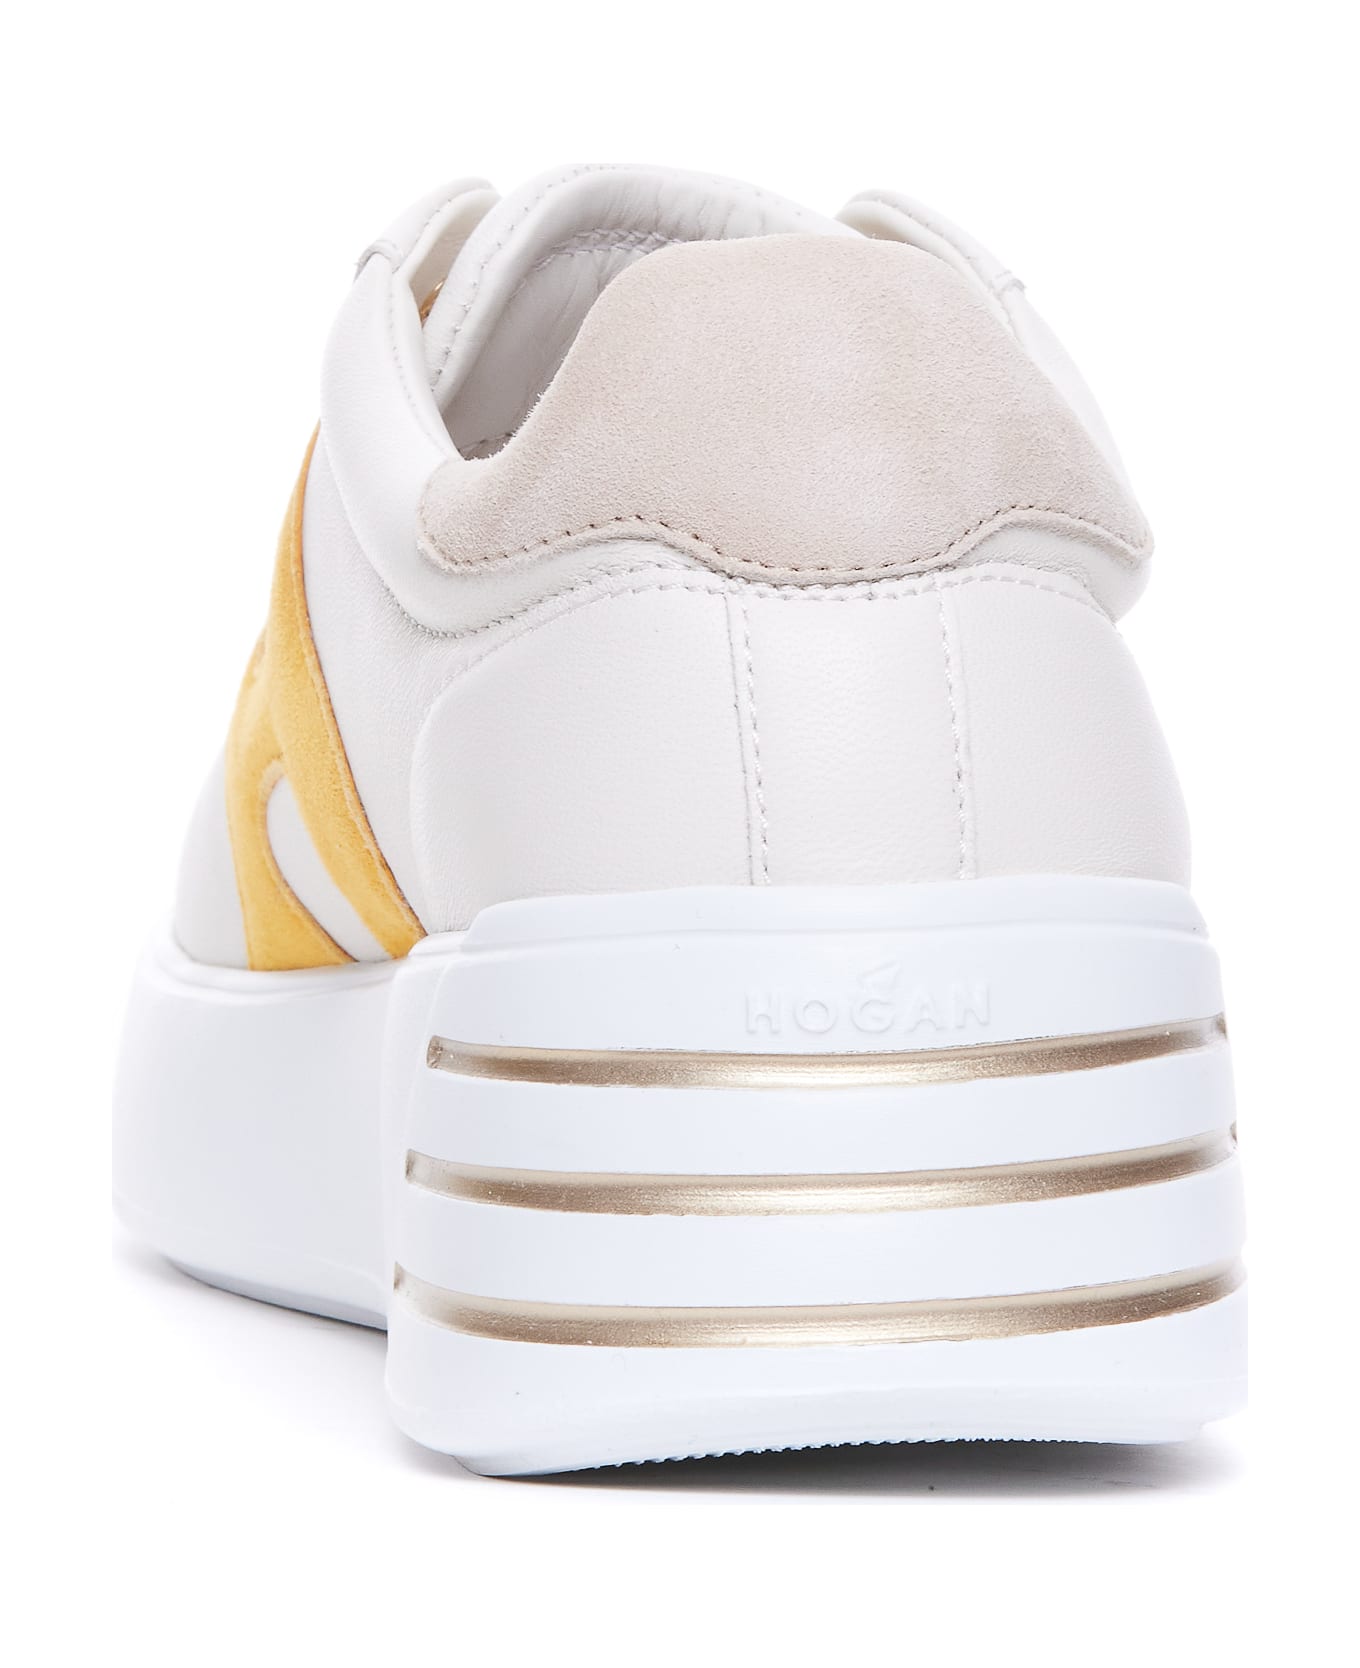 Hogan Rebel Sneakers - Bianco/senape